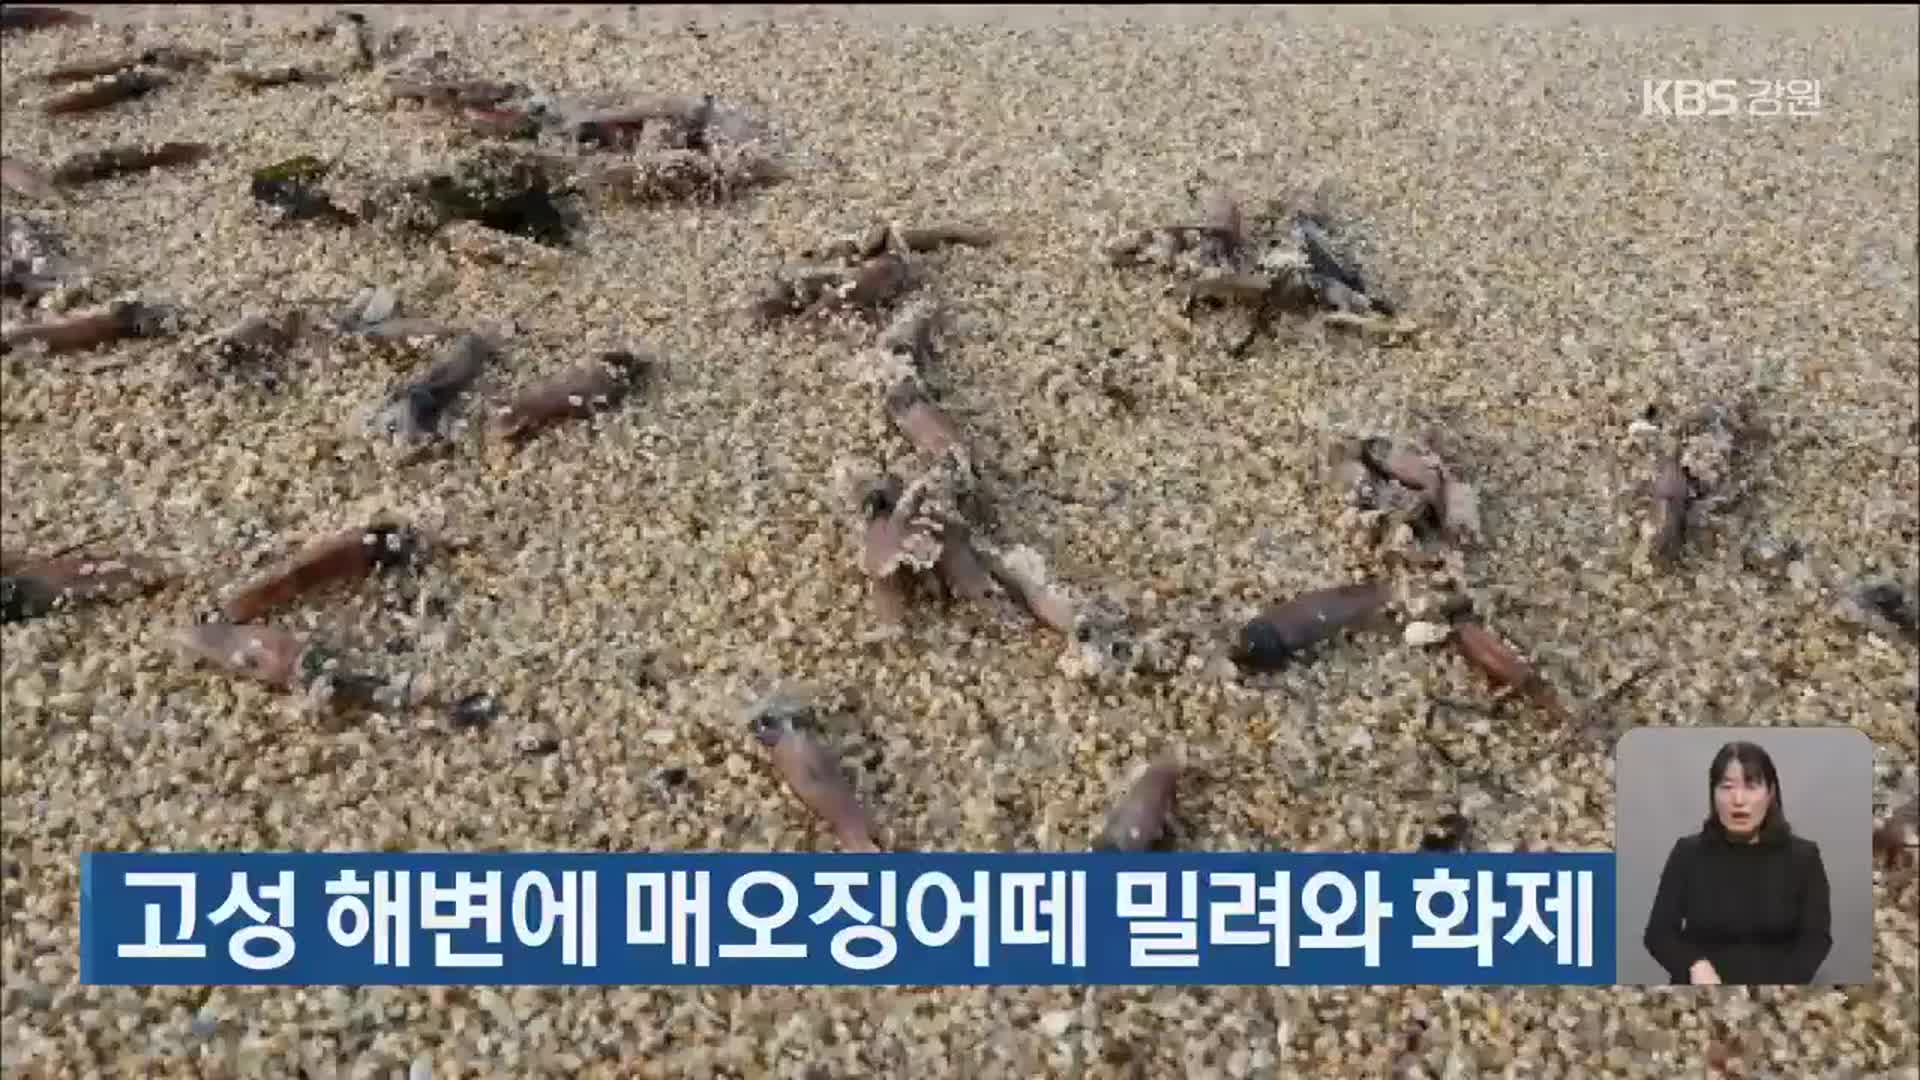 고성 해변에 매오징어떼 밀려와 화제